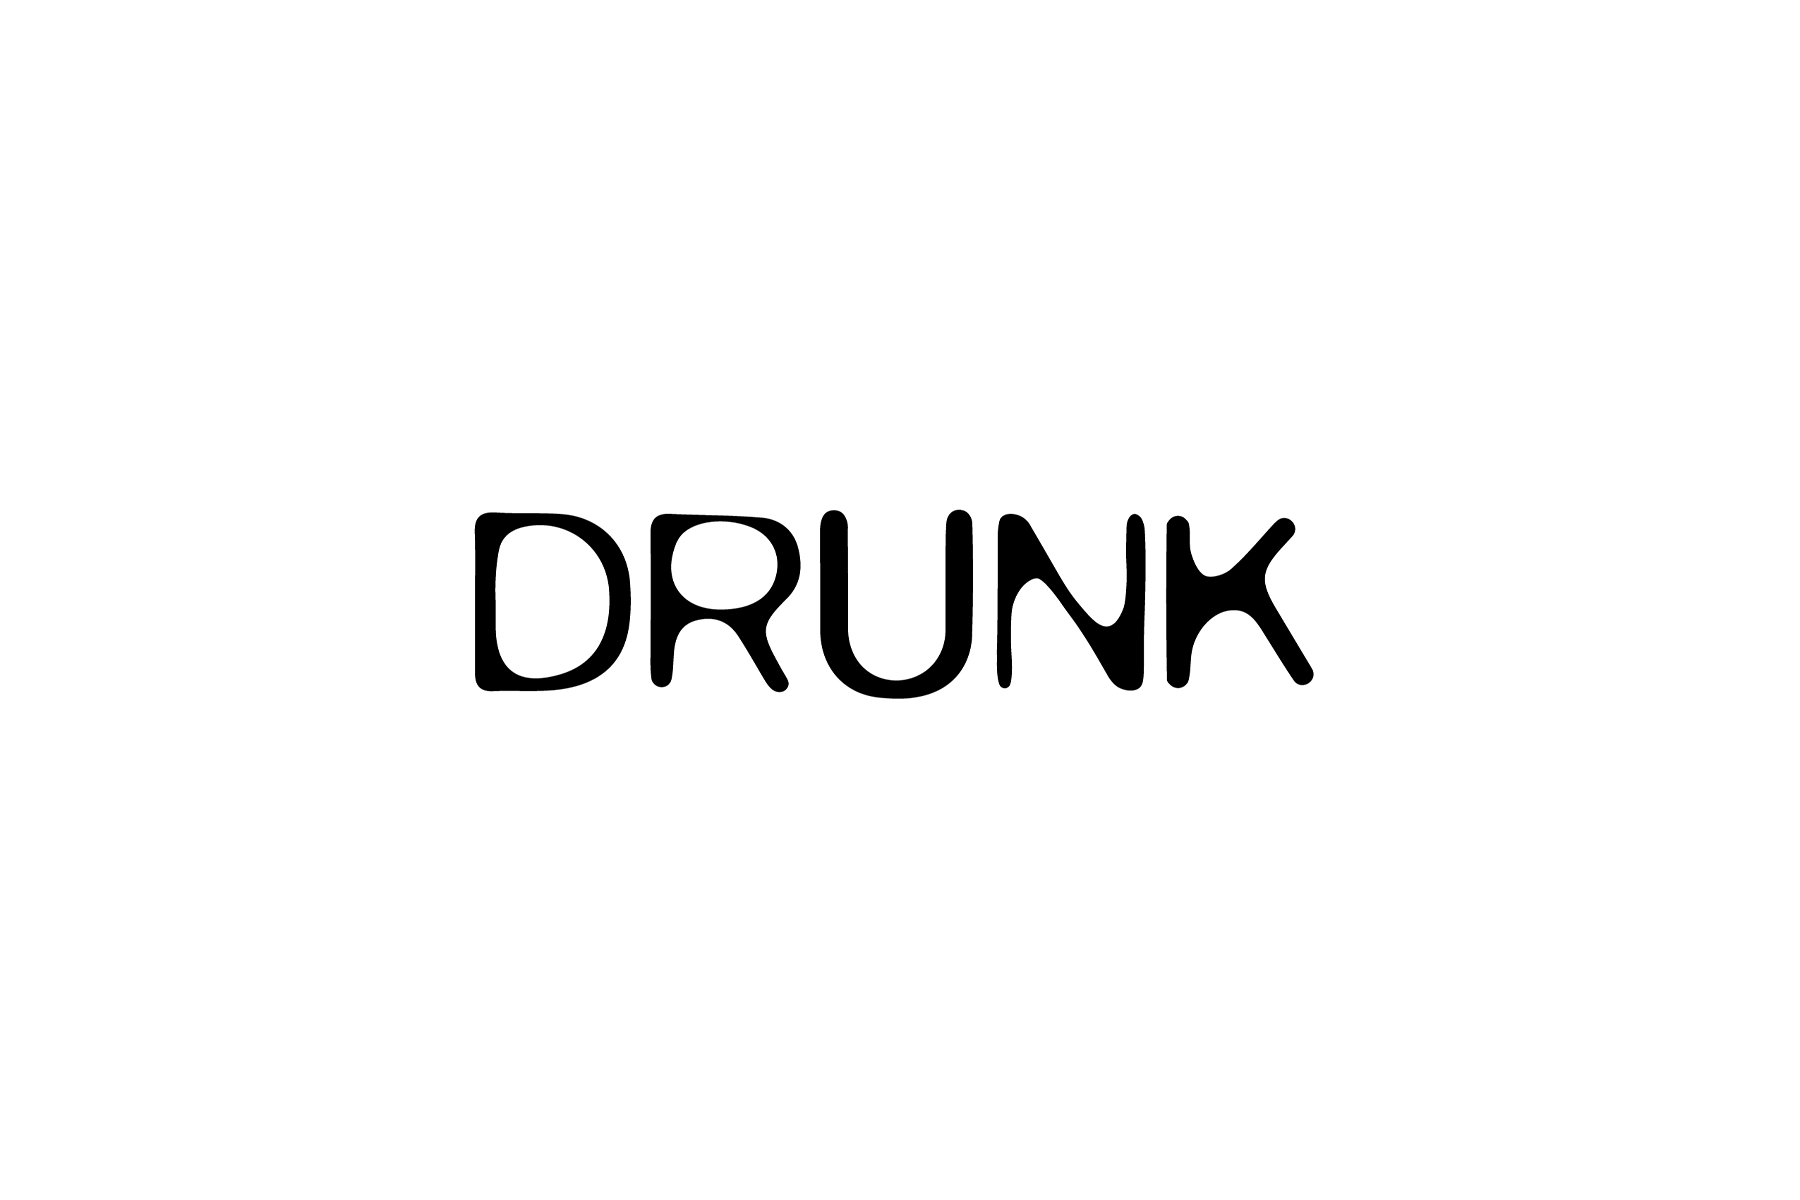 DRUNK_drunk & SOBER_sober